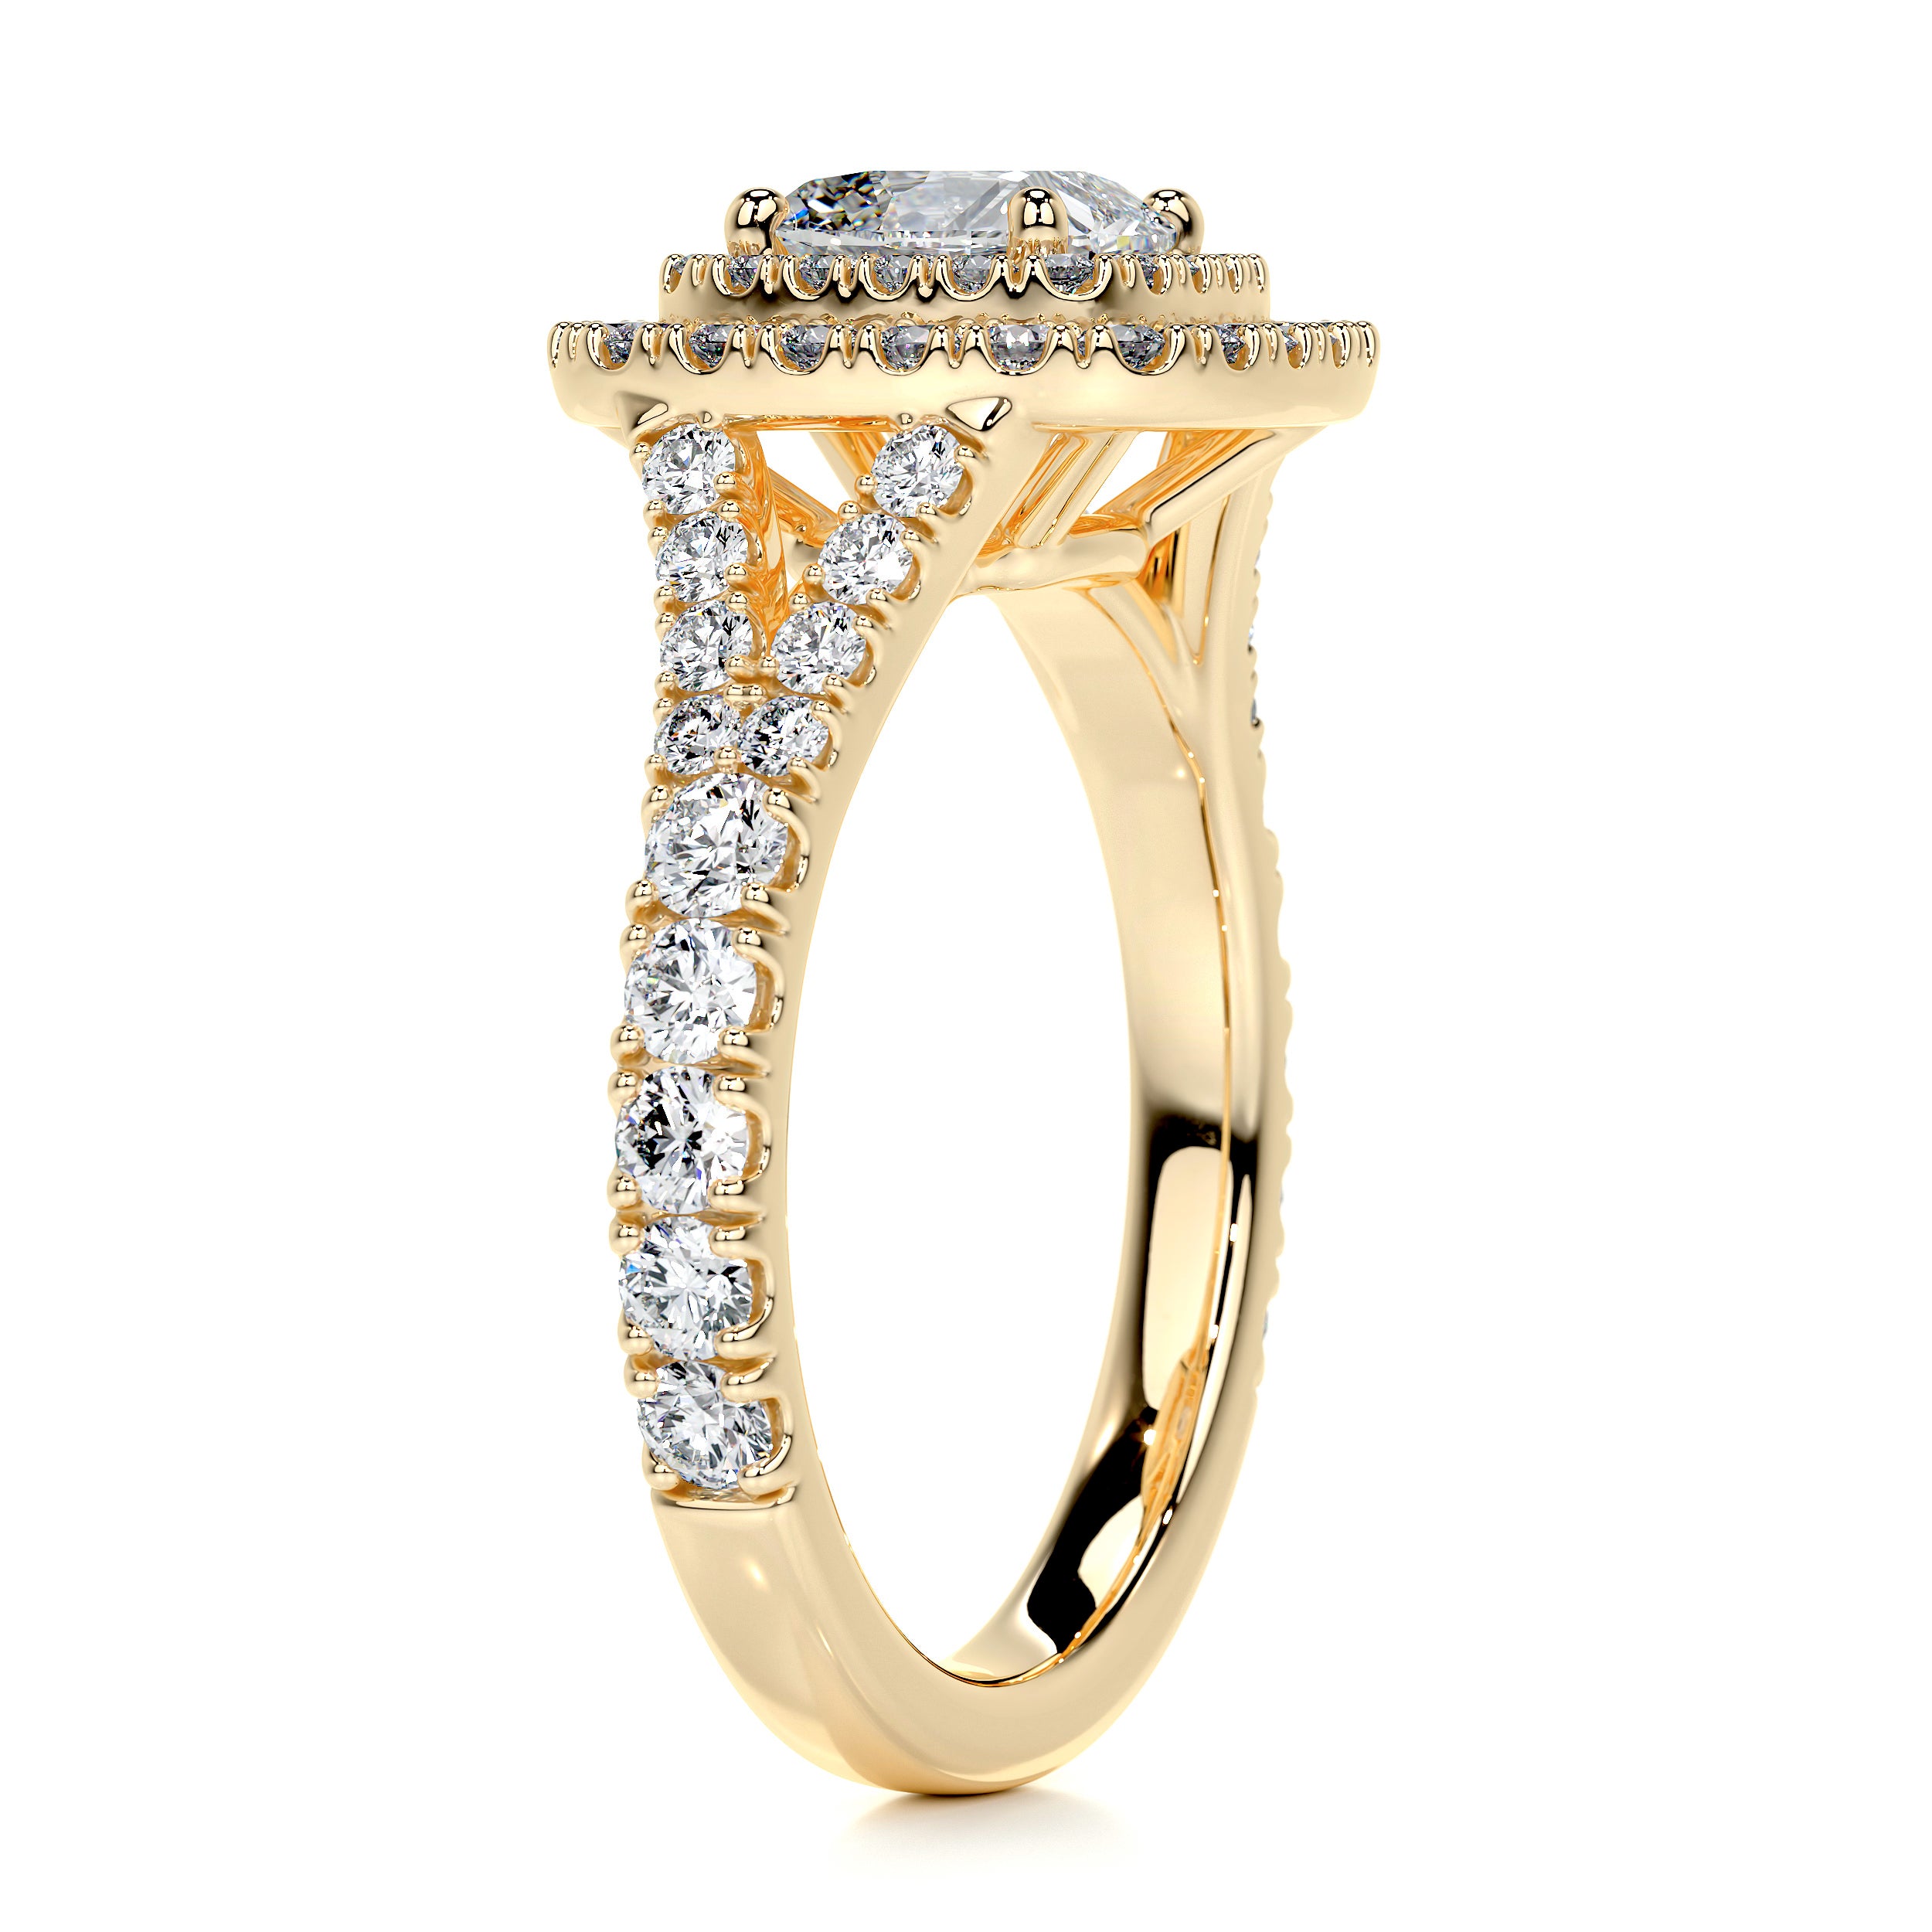 Tina Diamond Engagement Ring   (1.90 Carat) -18K Yellow Gold